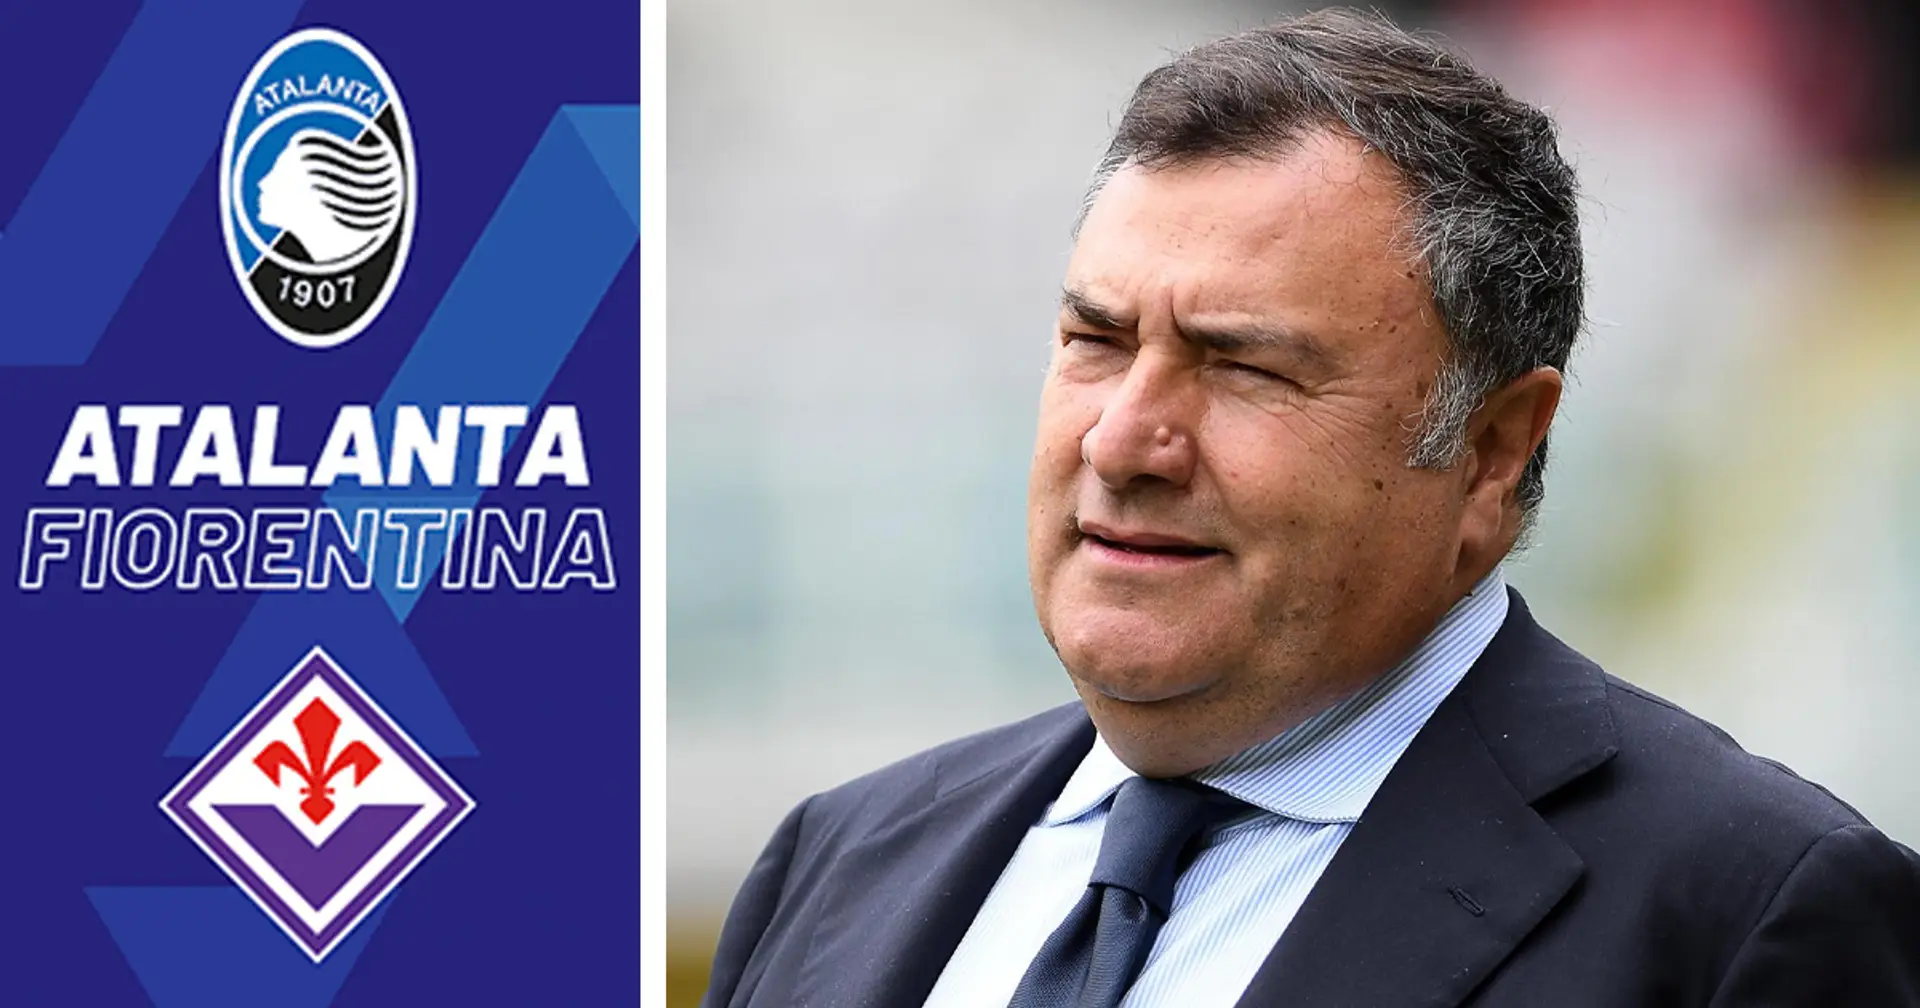 Rinviata Atalanta-Fiorentina: malore per il direttore Joe Barone, le condizioni sono gravi